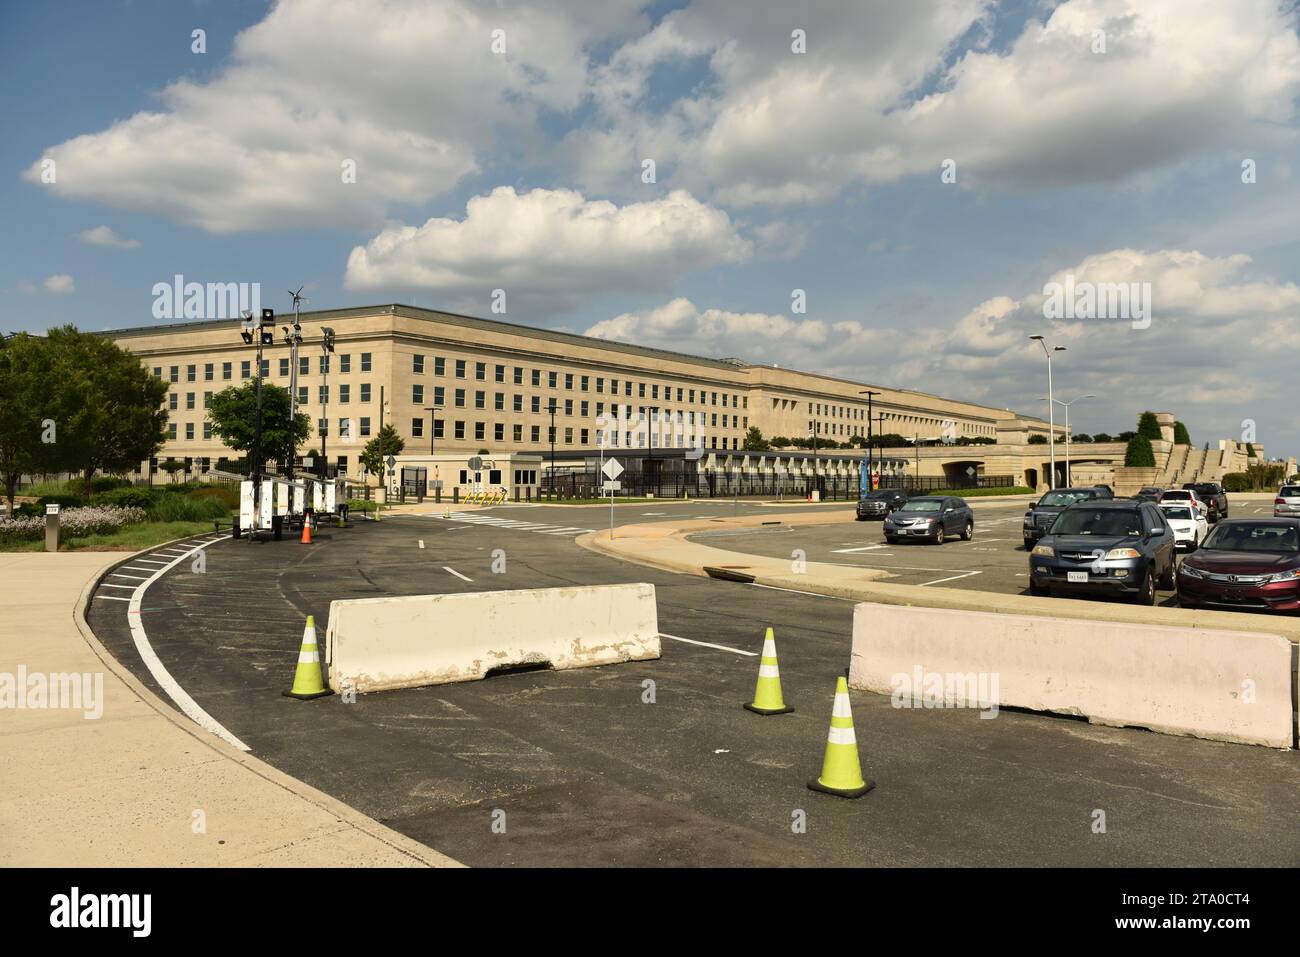 Washington, DC - 1 giugno 2018: Barriere di sicurezza di fronte all'edificio del Pentagono, quartier generale del Dipartimento della difesa degli Stati Uniti. Foto Stock